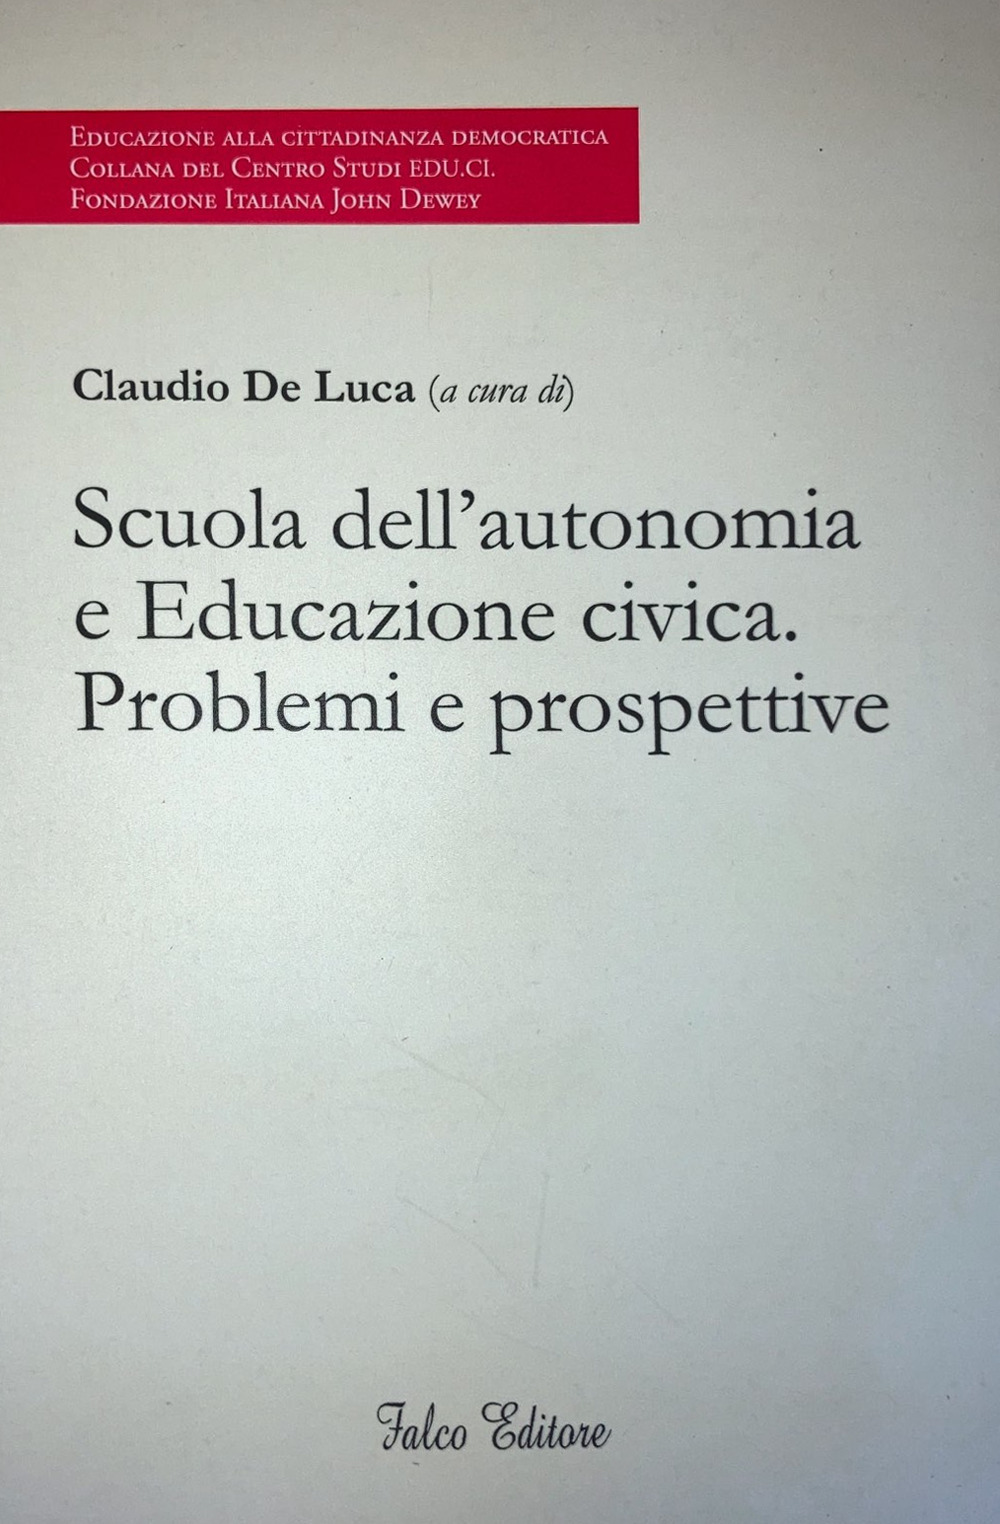 Image of Scuola dell'autonomia e Educazione civica. Problemi e prospettive